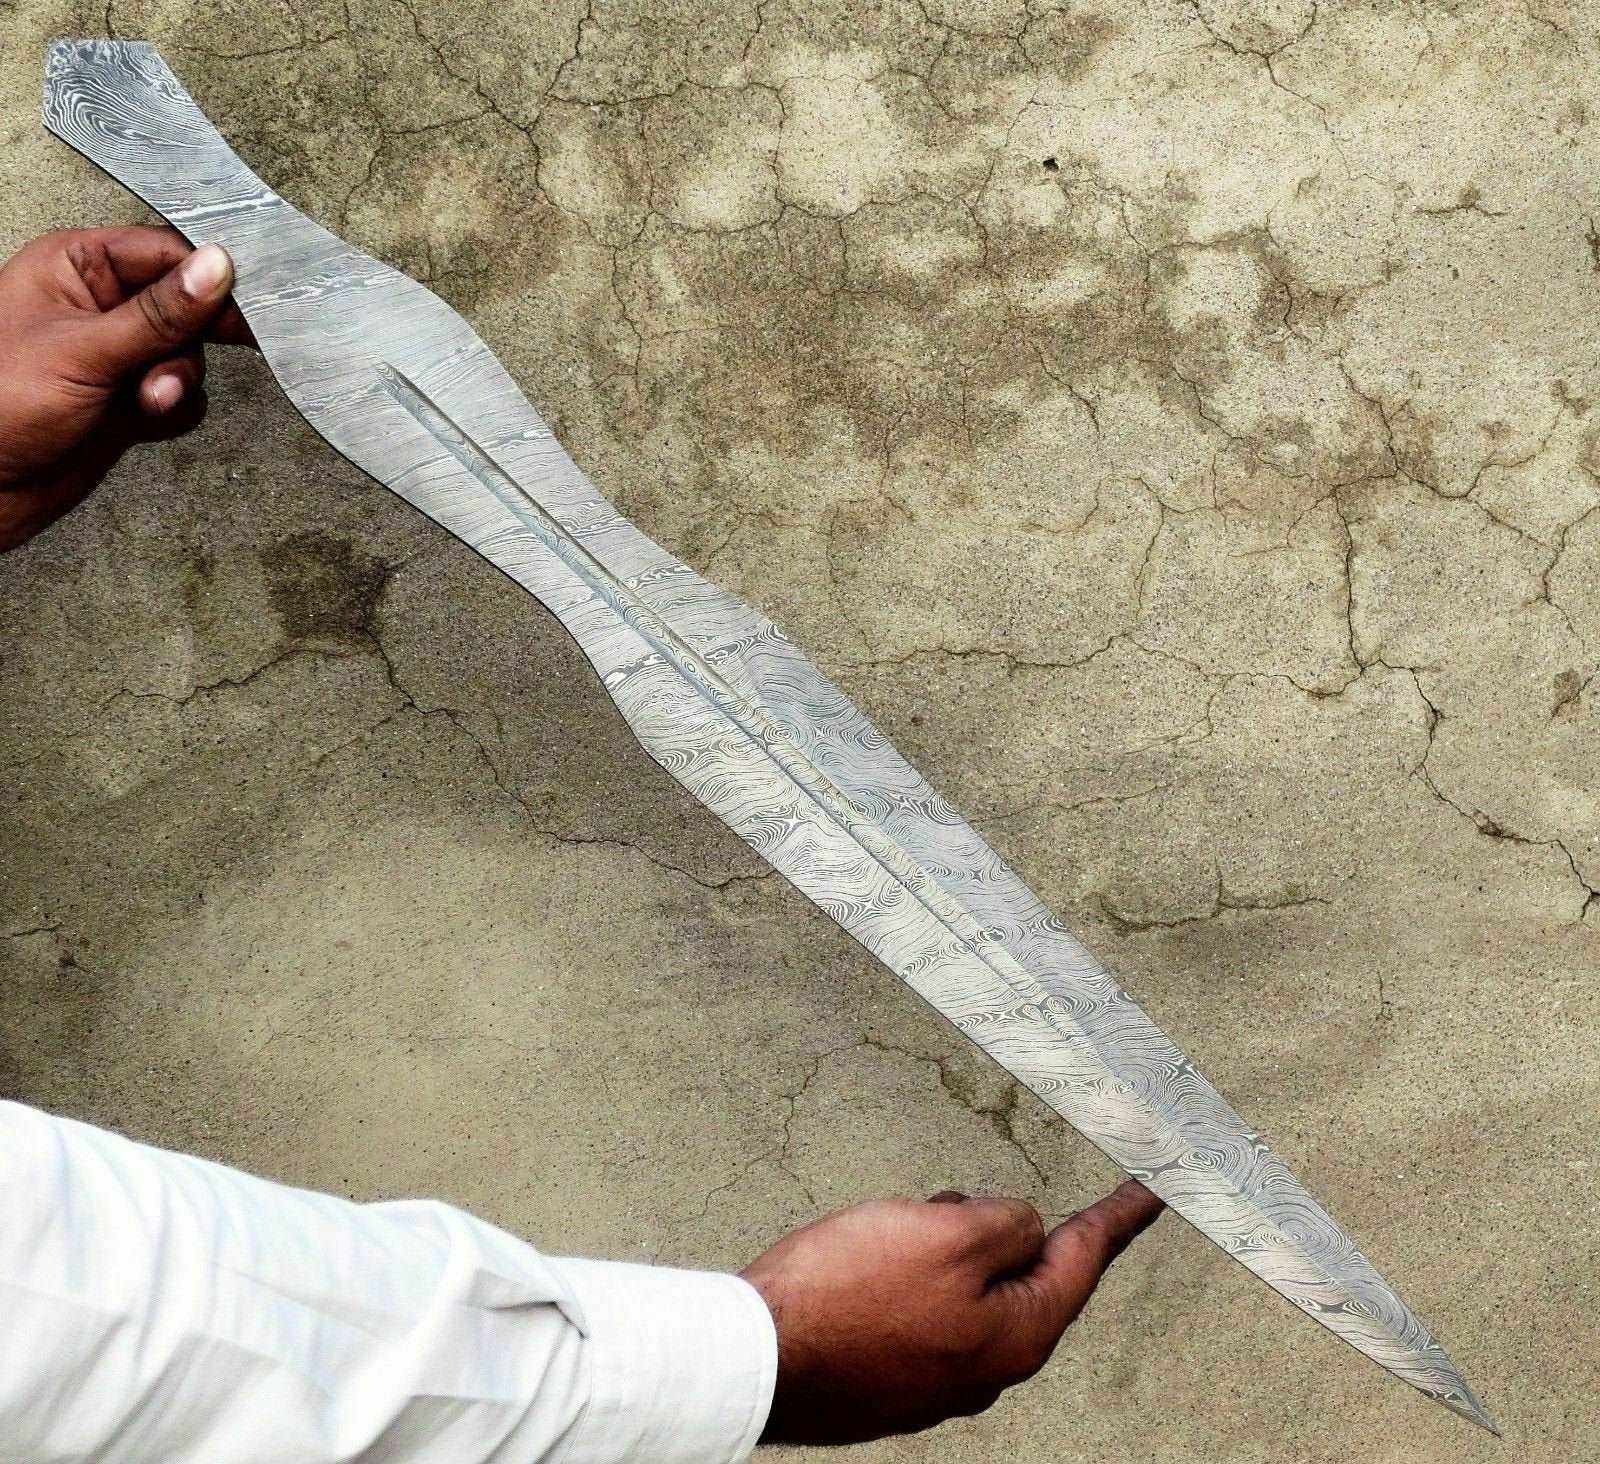 Damascus Blank Blade Dagger Sword Hunting Knife For Making DK-0251Sword